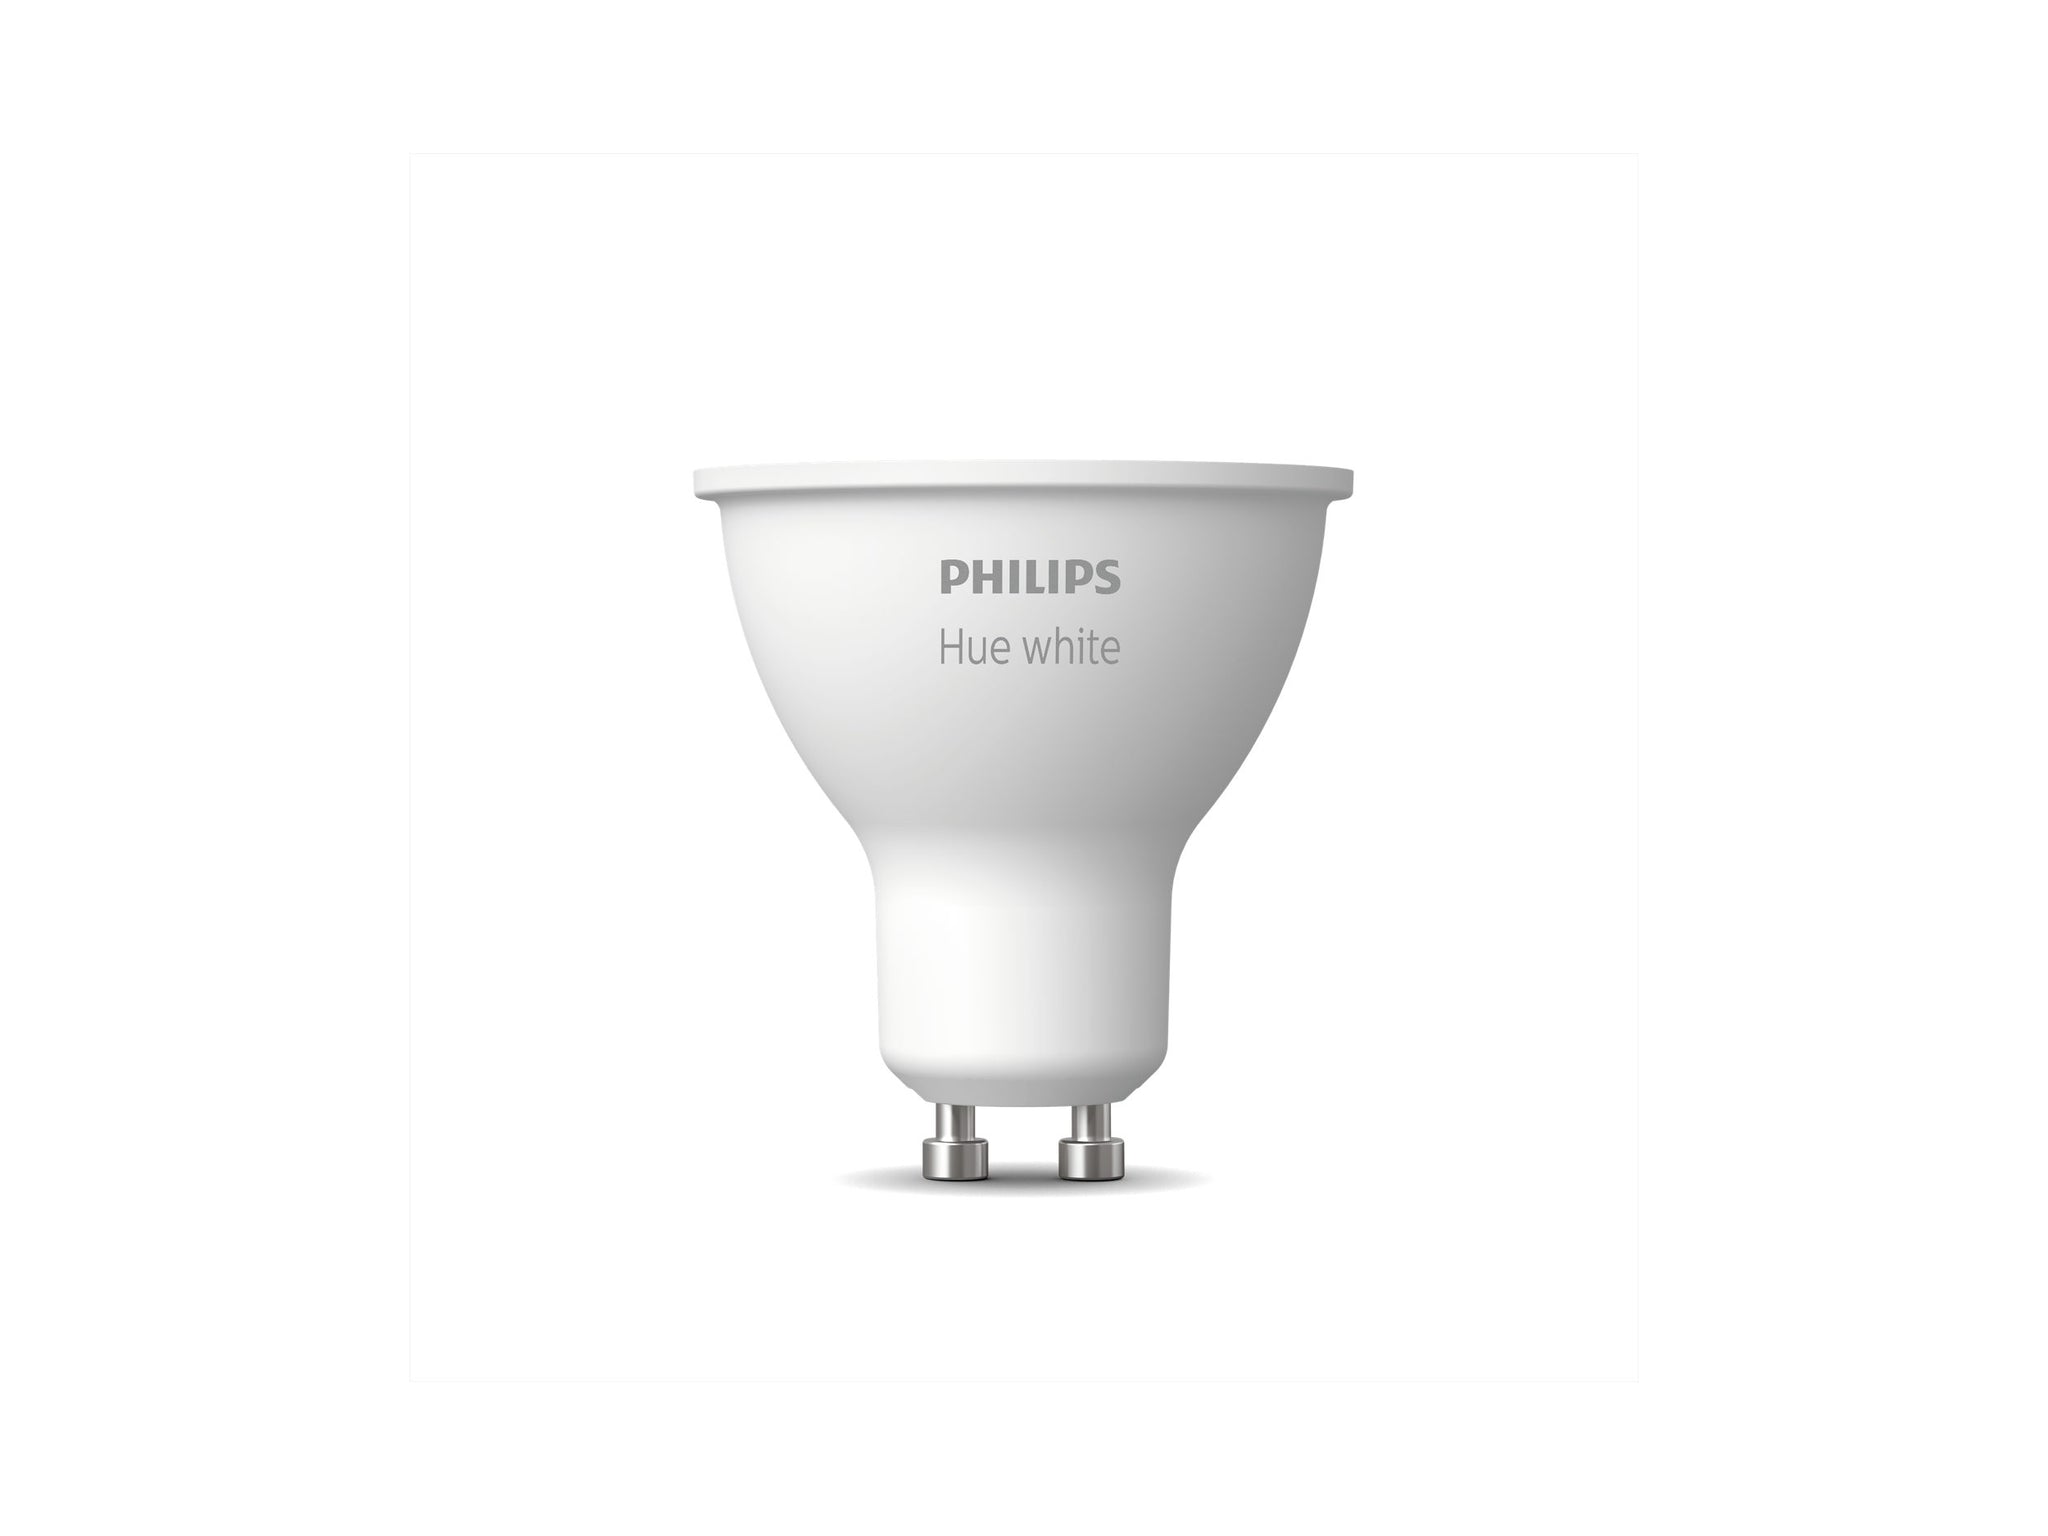 Philips Hue White Light Smart Lightbulb - GU10 Spotlight